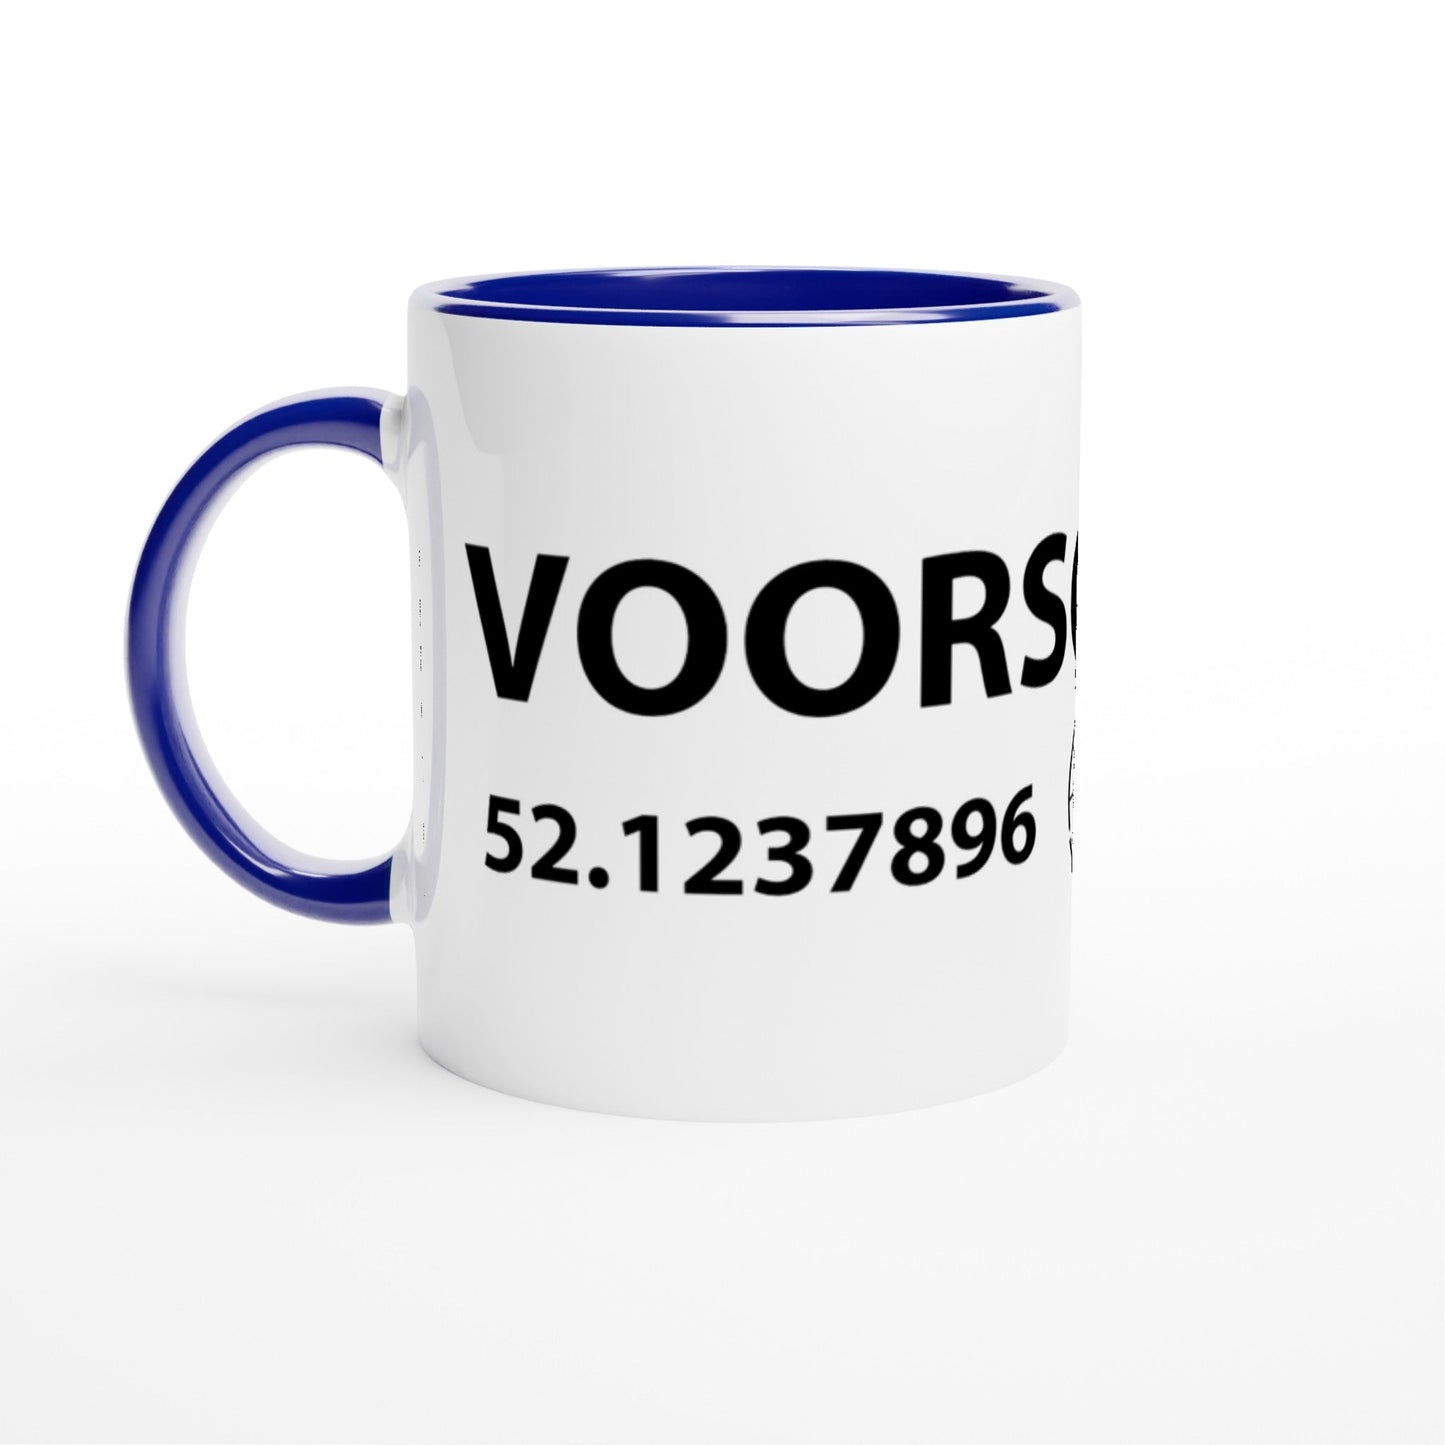 MOK met coördinaten Voorschoten - Webshop I Love Voorschoten